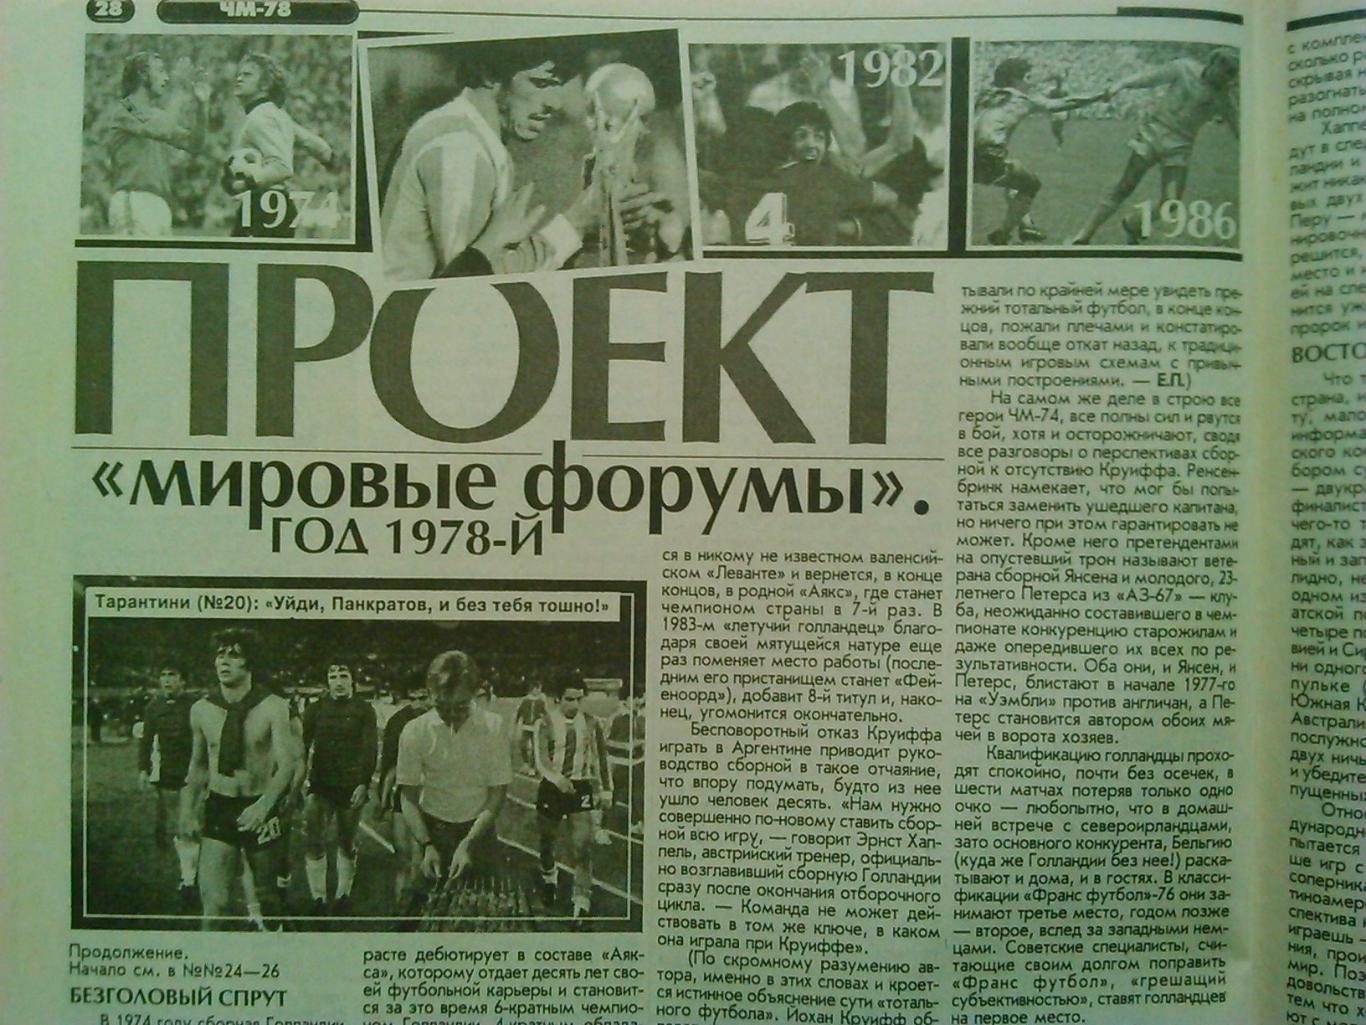 Футбол (Украина) №27.(199.)2001.Пост ер-Г.Хаджи/Э.Купер. Оптом скидки до 50%! 1